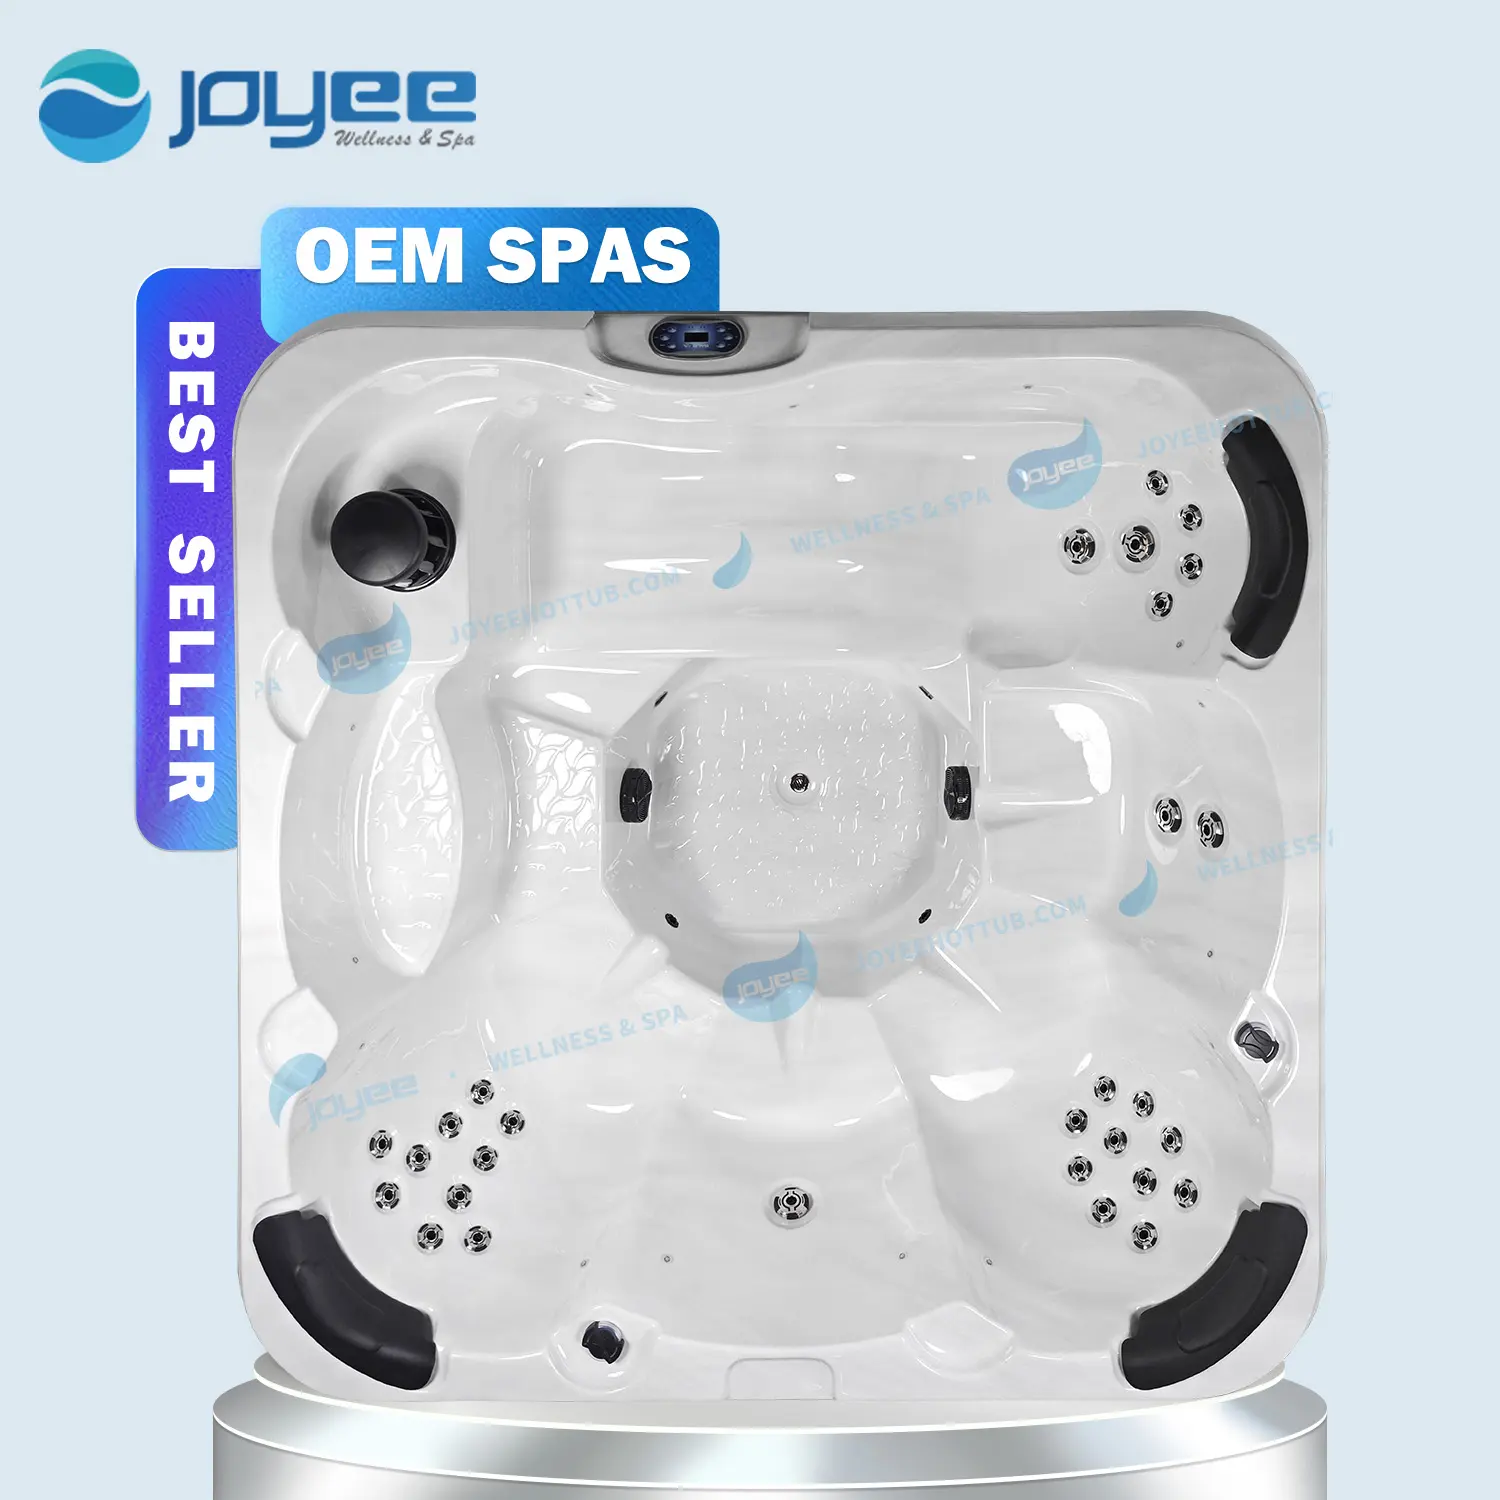 JOYEE prix d'usine meilleure qualité acrylique 5 personnes Balboa Spa extérieur bains à remous Spa extérieur baignoire avec bain à remous Massage Spa